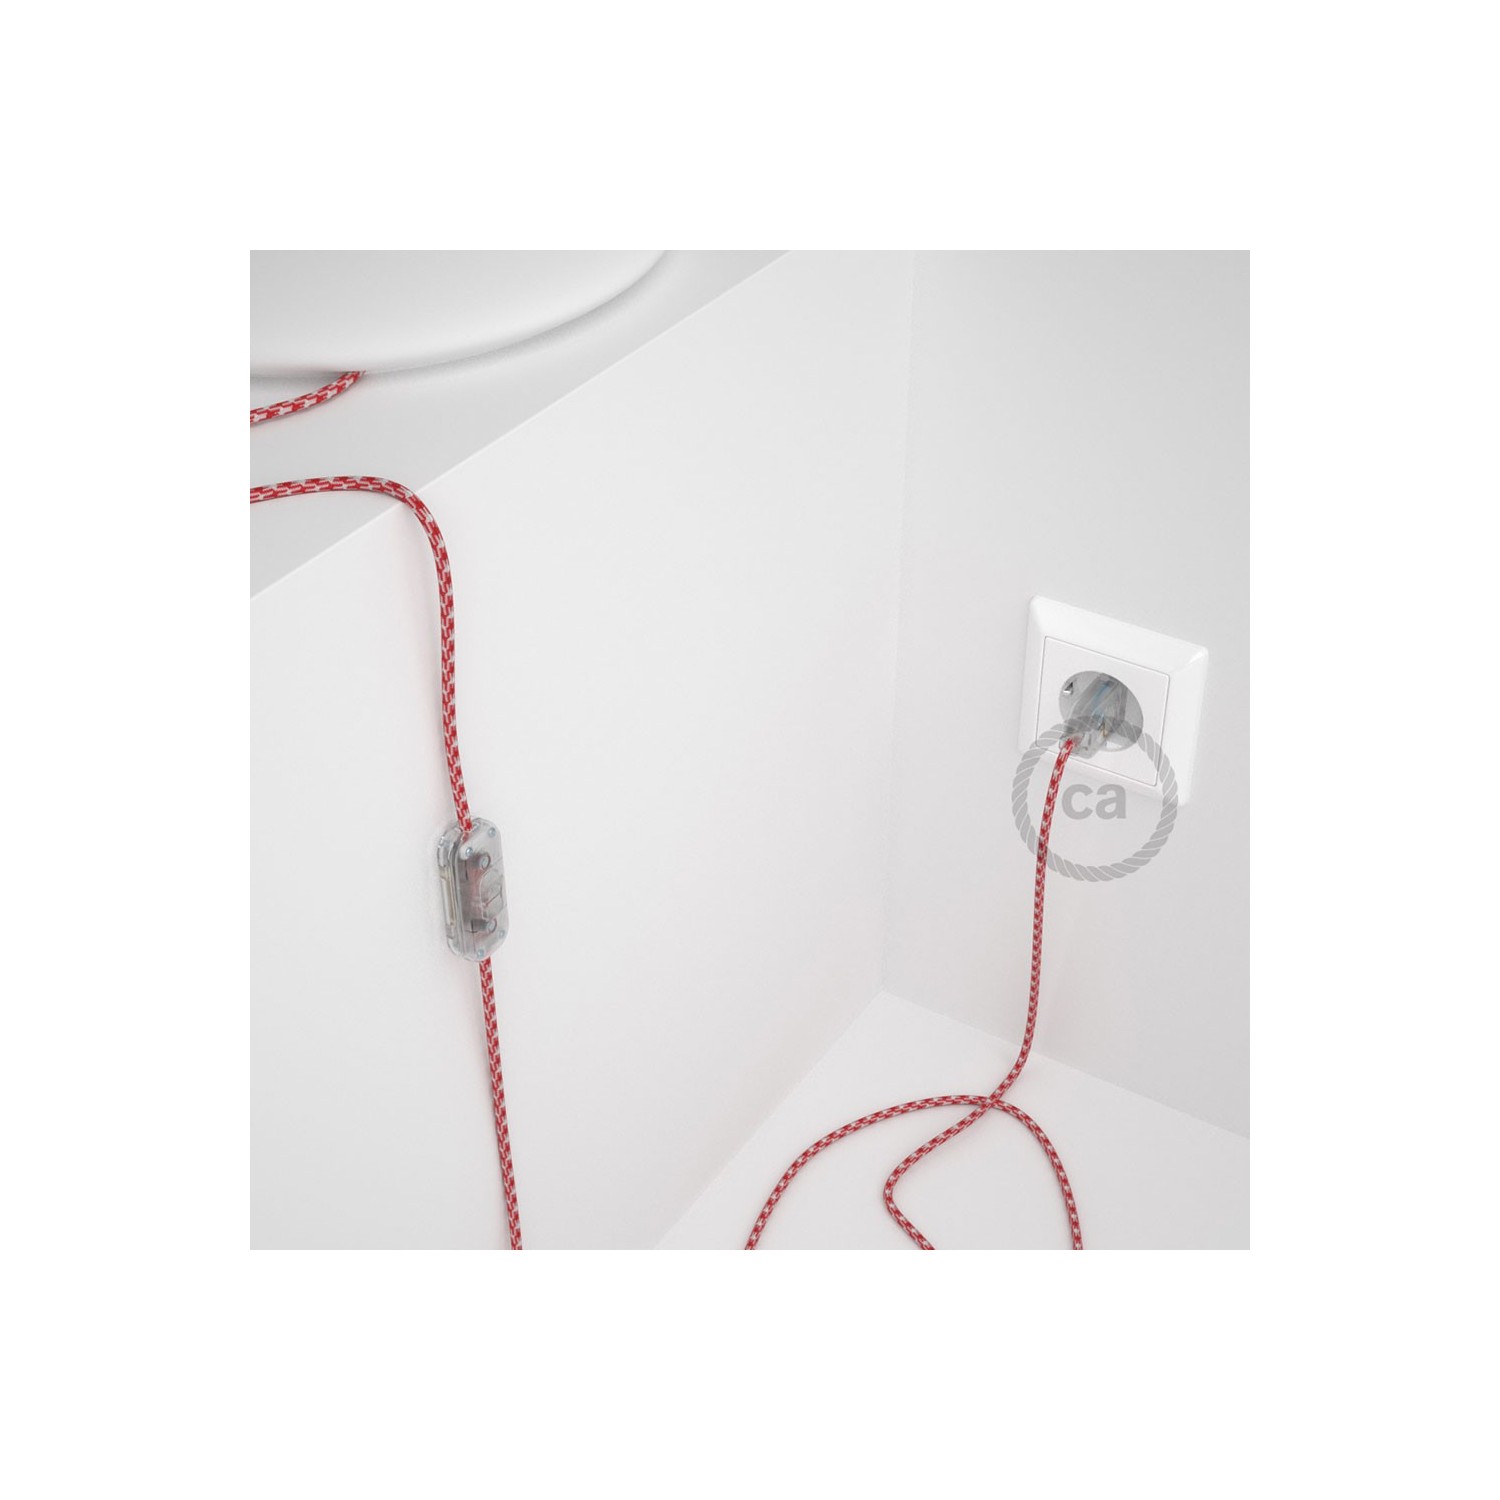 Napájecí kabel pro stolní lampu, RP09 Bílo - červený hedvábný 1,80 m. Vyberte si barvu zástrčky a vypínače.